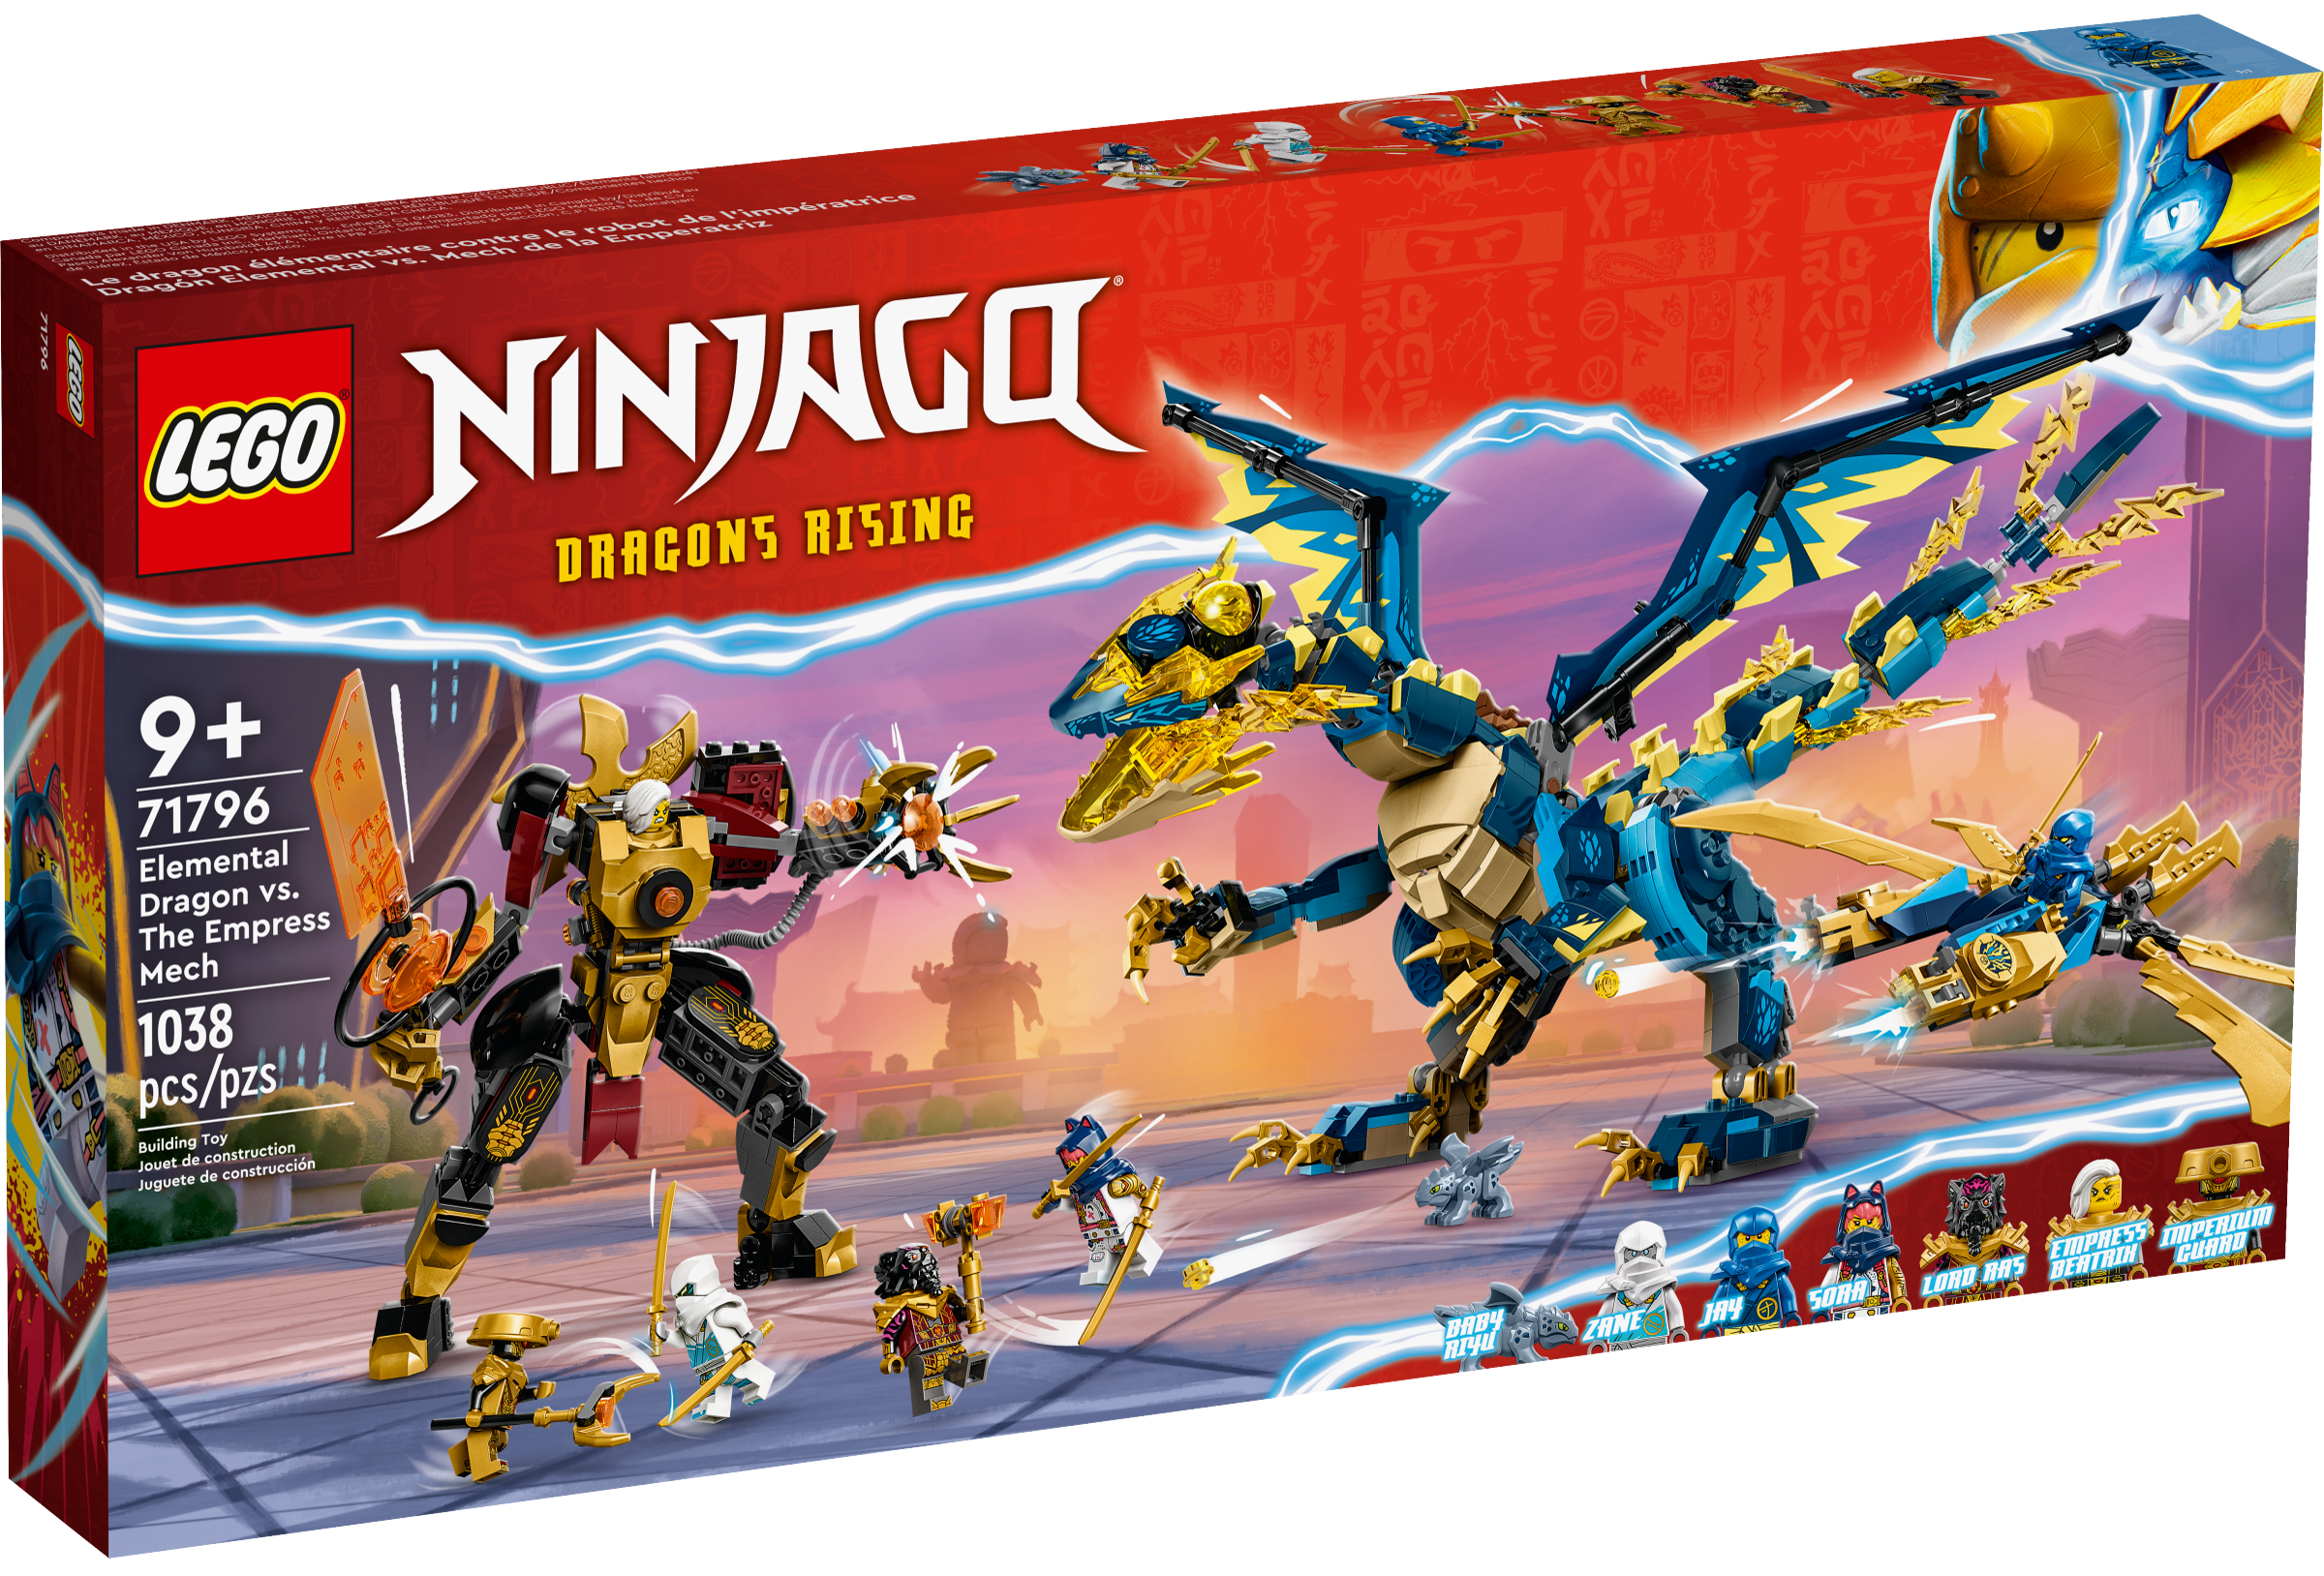 Source Dragons, Ninjago Wiki